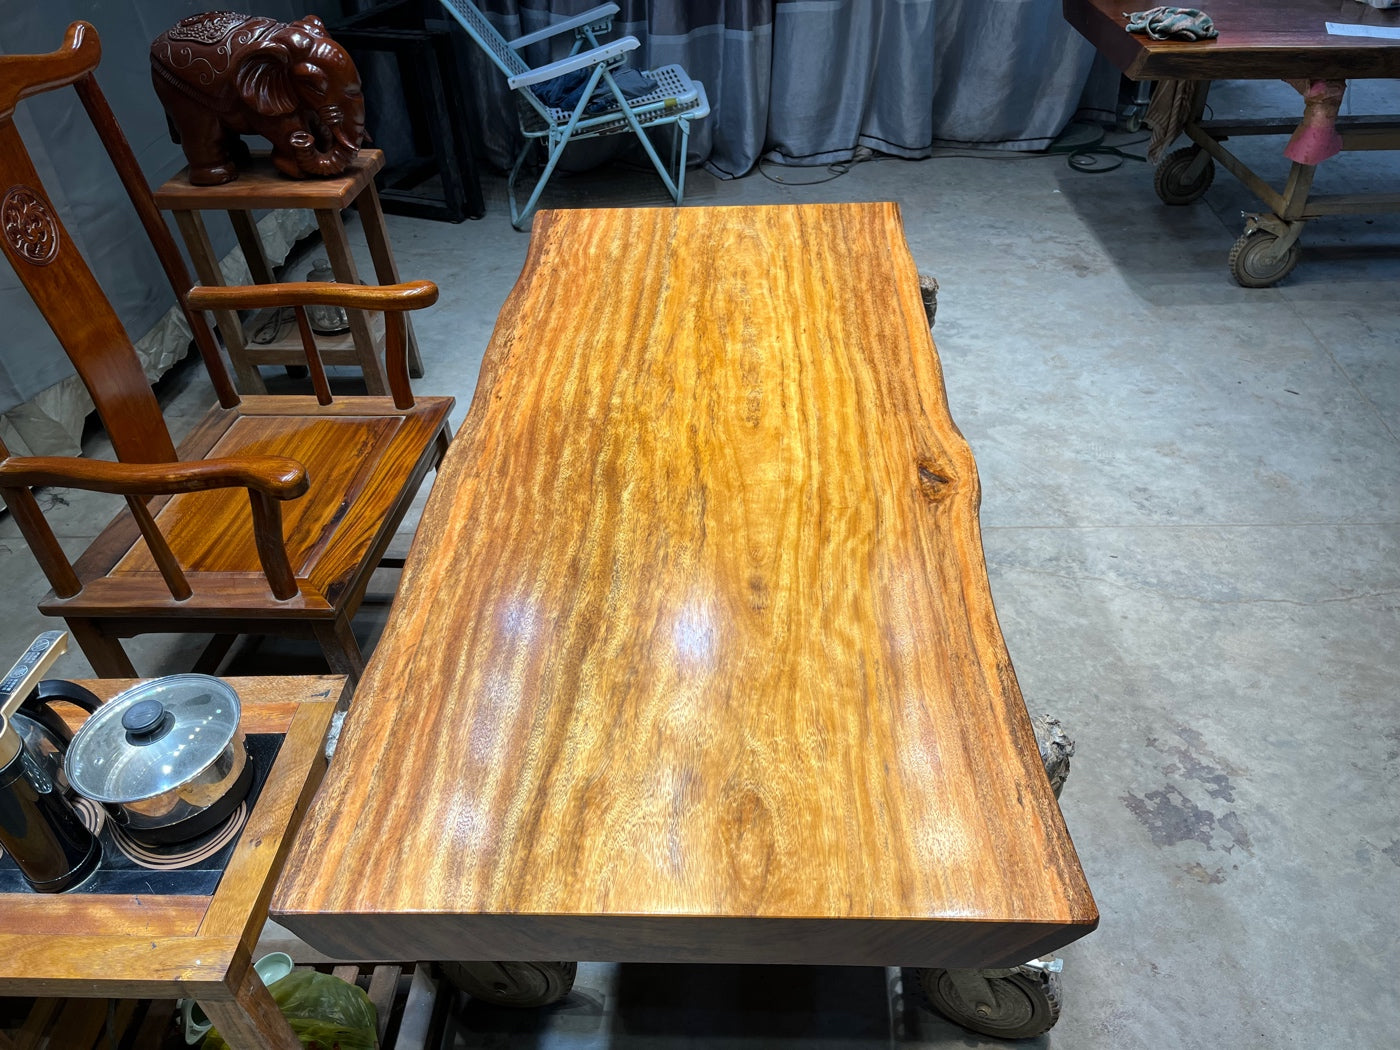 Marble table top slab, wood slab, Tali slab, Tali table, Tali wood slab